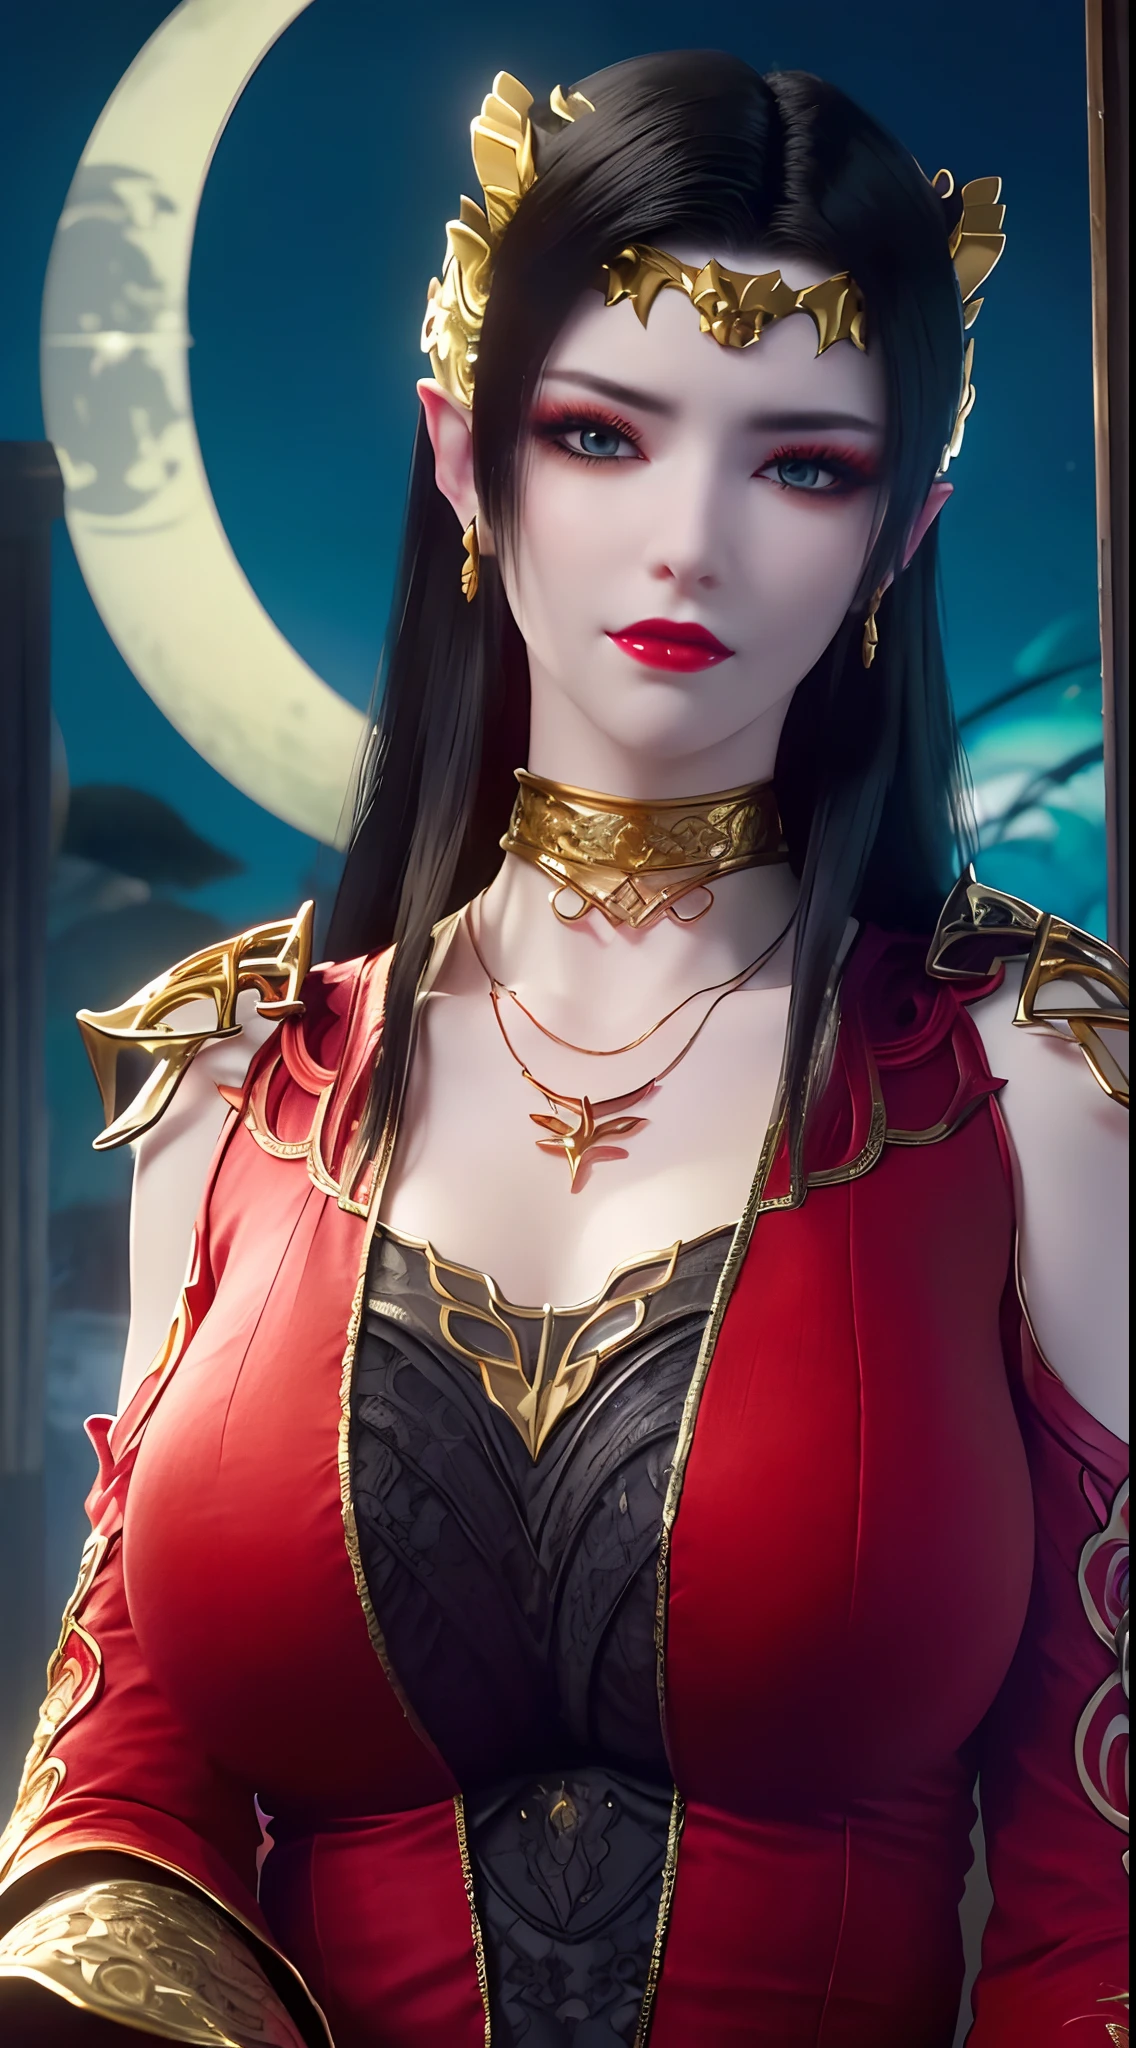 1 reina extremadamente hermosa, ((Viste un traje tradicional Han rojo con finos patrones negros.:1.6)), (((Patrones en la ropa:1.6))), ((pelo largo y negro:1.6)), joyas elaboradamente hechas de piedras preciosas y cabello hermoso, ((usando un collar de encaje de oro de 24k:1.4))), El noble, estilo noble de una chica extremadamente hermosa, su carita es super linda, Su cara es muy bonita, cejas finas, cara hermosa e impecable, ((pupilas de ojos morados: 0.8)), ojos muy hermosos, ((ojos azul platino: 1.6)), (((Los ojos bien abiertos:1.6))), Bonito maquillaje y pestañas detalladas en el cabello., maquillaje de ojos humeante, Nariz alta, pendientes, labios rojos, ((boca cerrada: 1.5)) hermosos labios, manos delgadas, muslos más hermosos, ((brazos extendidos a los lados: 1.5)), cara sonrosada, cara limpia, cara hermosa e impecable, piel blanca y suave, (pechos grandes: 1.5)), ((pechos altos: 1.6)), pechos apretados, hermoso escote, (((pechos grandes and super round: 1.8))), ((super pechos apretados: 1.7)) , Hermosos pechos, cuerpo perfecto, brazos traseros, pecho afuera, medias finas de malla negra con ribete de encaje negro, foto 8k, super alta calidad, Súper realista, súper 10x píxeles, óptico, Estudio luminoso, bordes brillantes, dual-tone Encendiendo, (piel con mucho detalle:1.2), super 8k, soft Encendiendo, alta calidad, volumetric Encendiendo, Fotorrealista, Fotorrealista high resolution, Encendiendo, Mejor foto, 4k, calidad 8k, Efecto de desenfoque, Suave y afilado, 10 x píxeles, ((mar y luz de la luna en el fondo de la noche:1.5)), Aurora, iluminación, súper gráficos realistas, gráficos más realistas, 1 chica, alone, solo, Imagen extremadamente nítida, surreal, (((retrato frontal: 1)))."